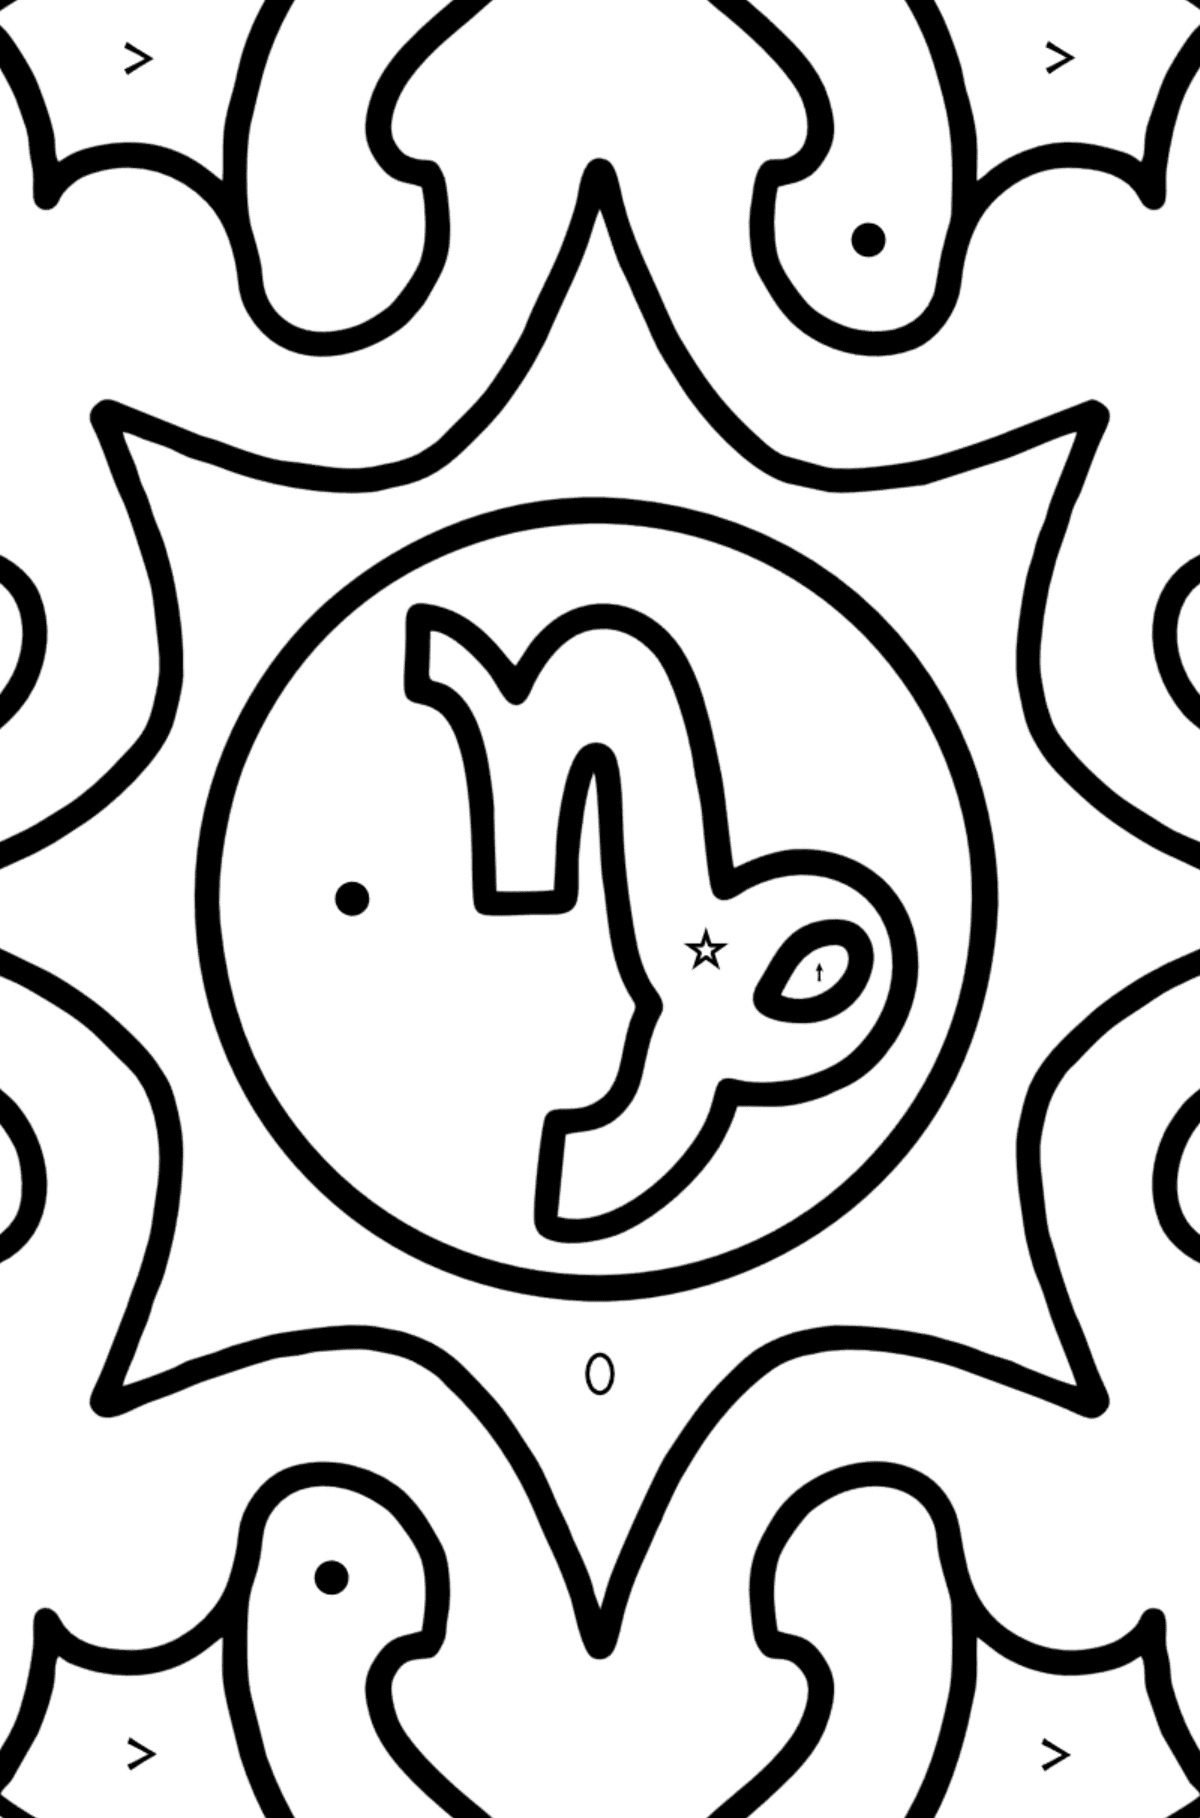 Розмальовка для дітей - знак зодіаку Козеріг - Розмальовка по Символам і Геометричним Фігурам для дітей